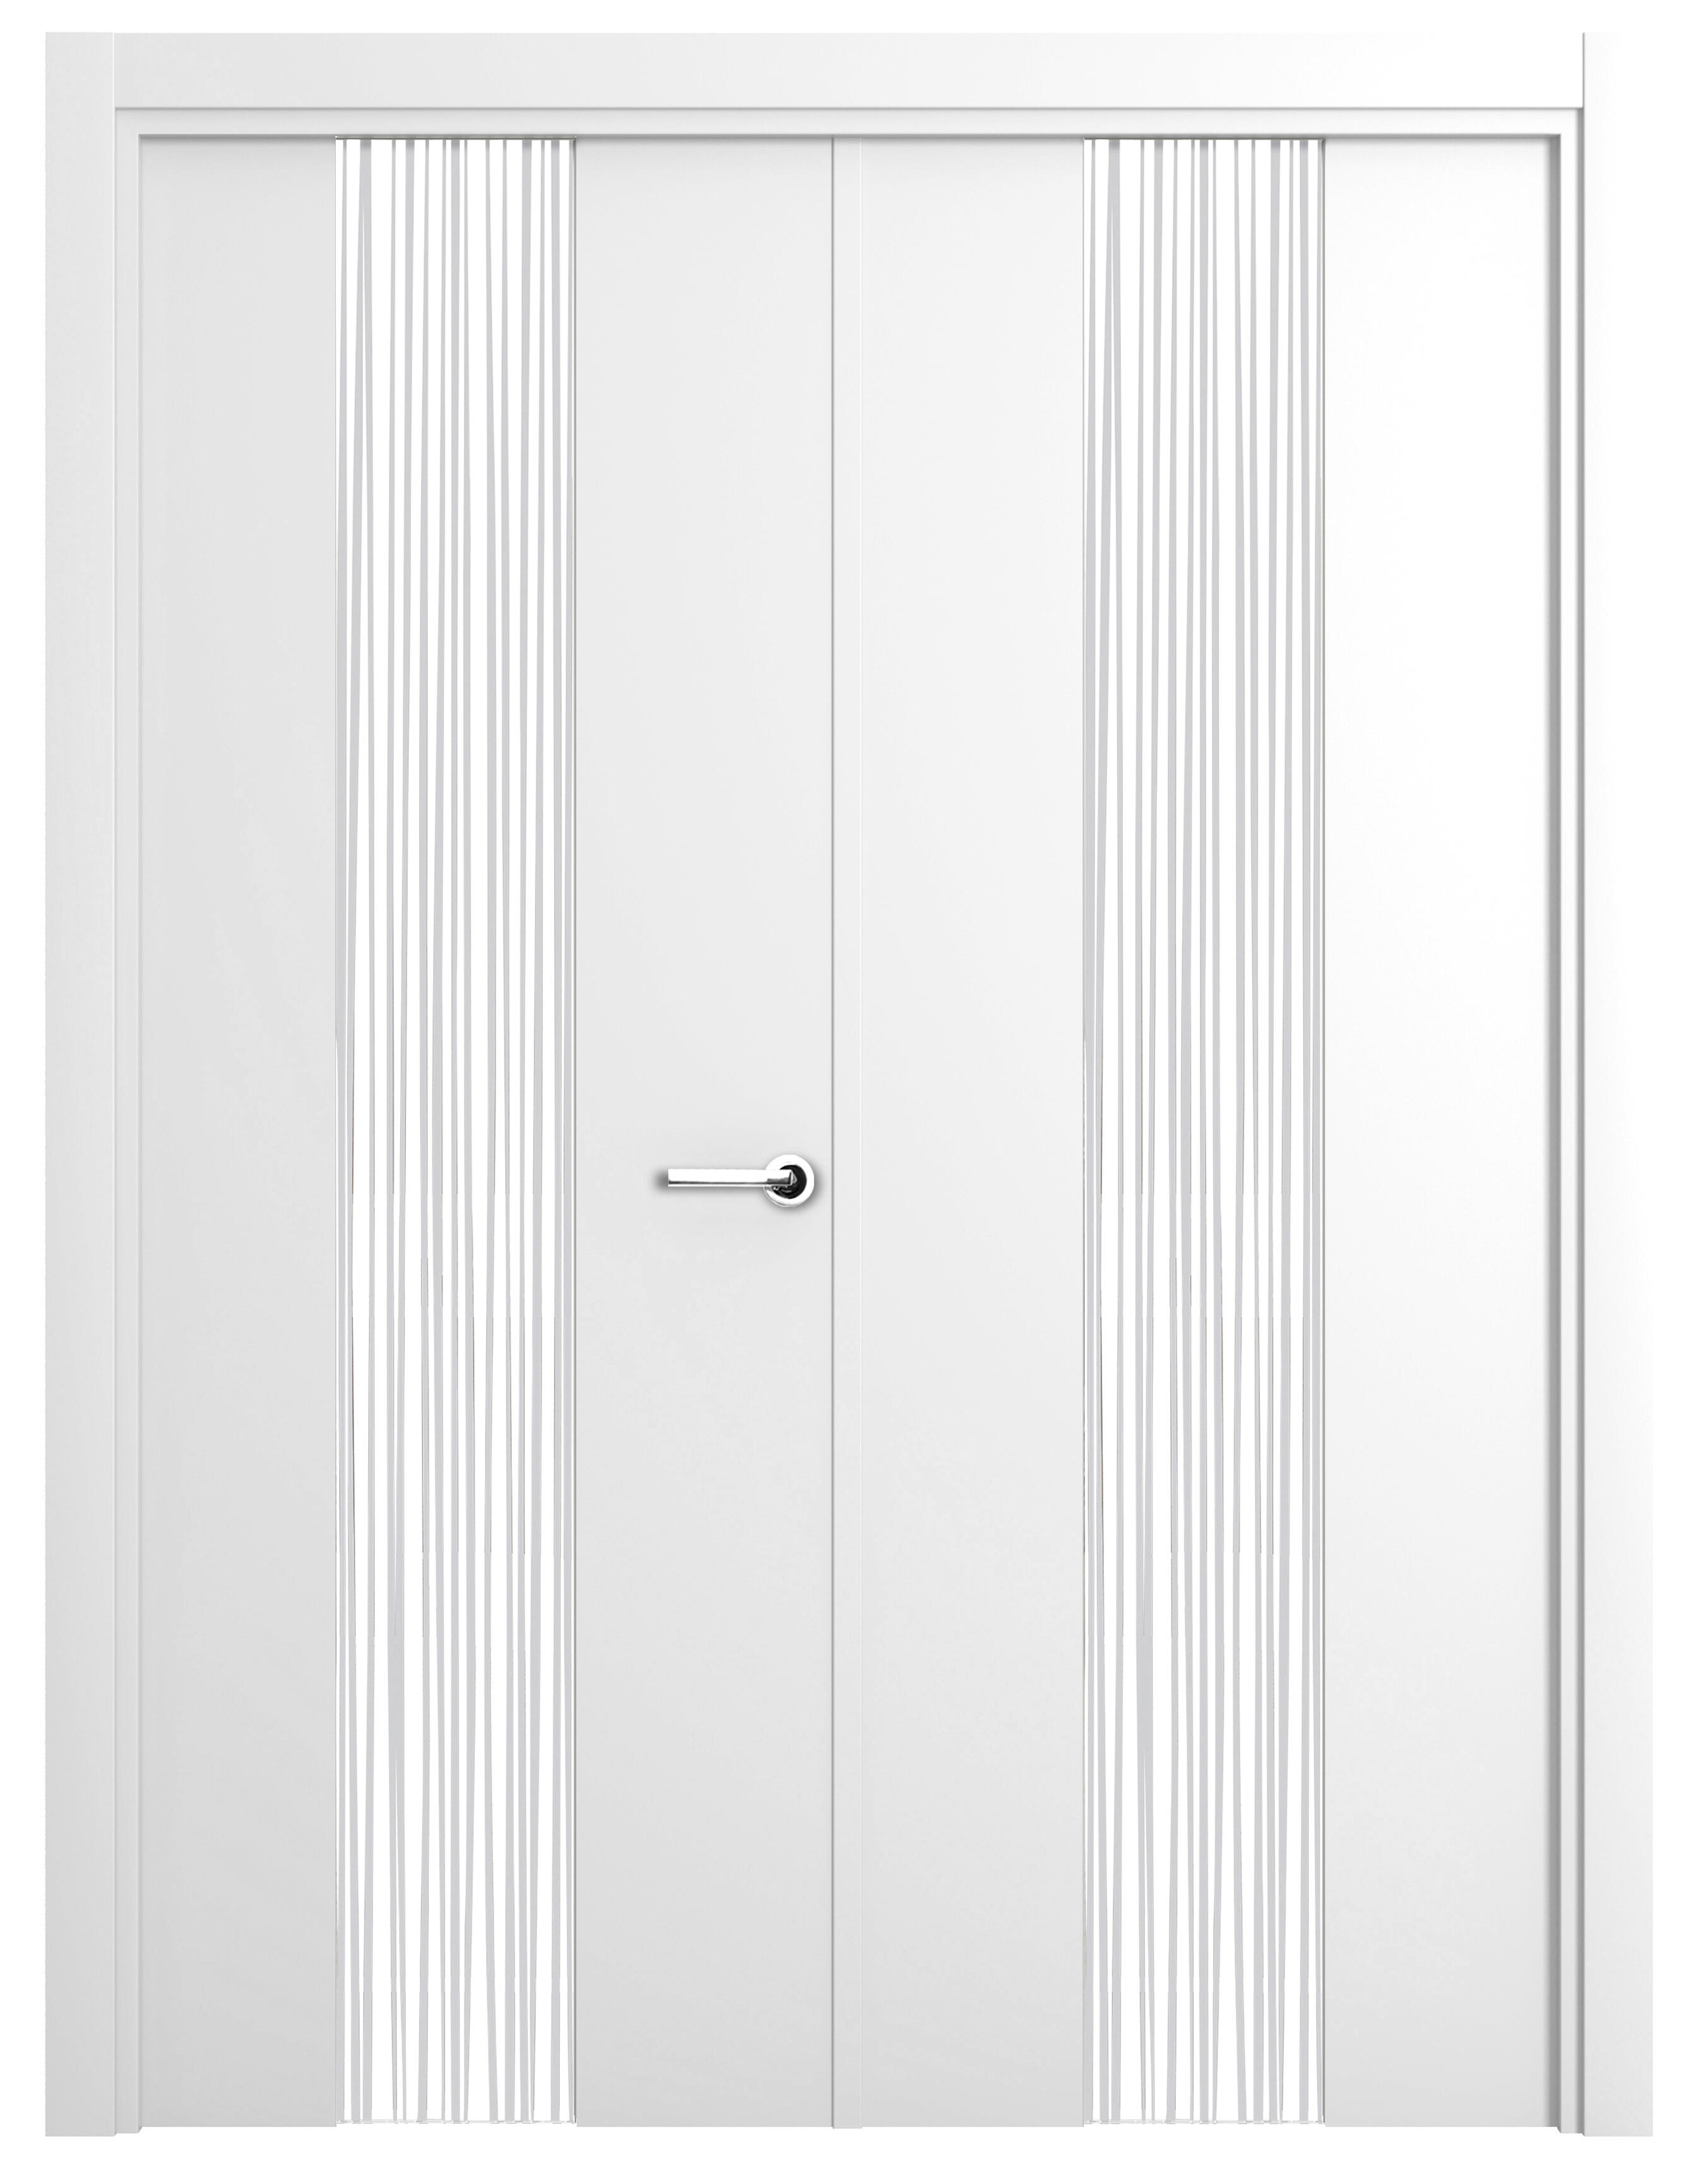 Puerta abatible quevedo blanca premium con cristal blanco izquierda de 165 c